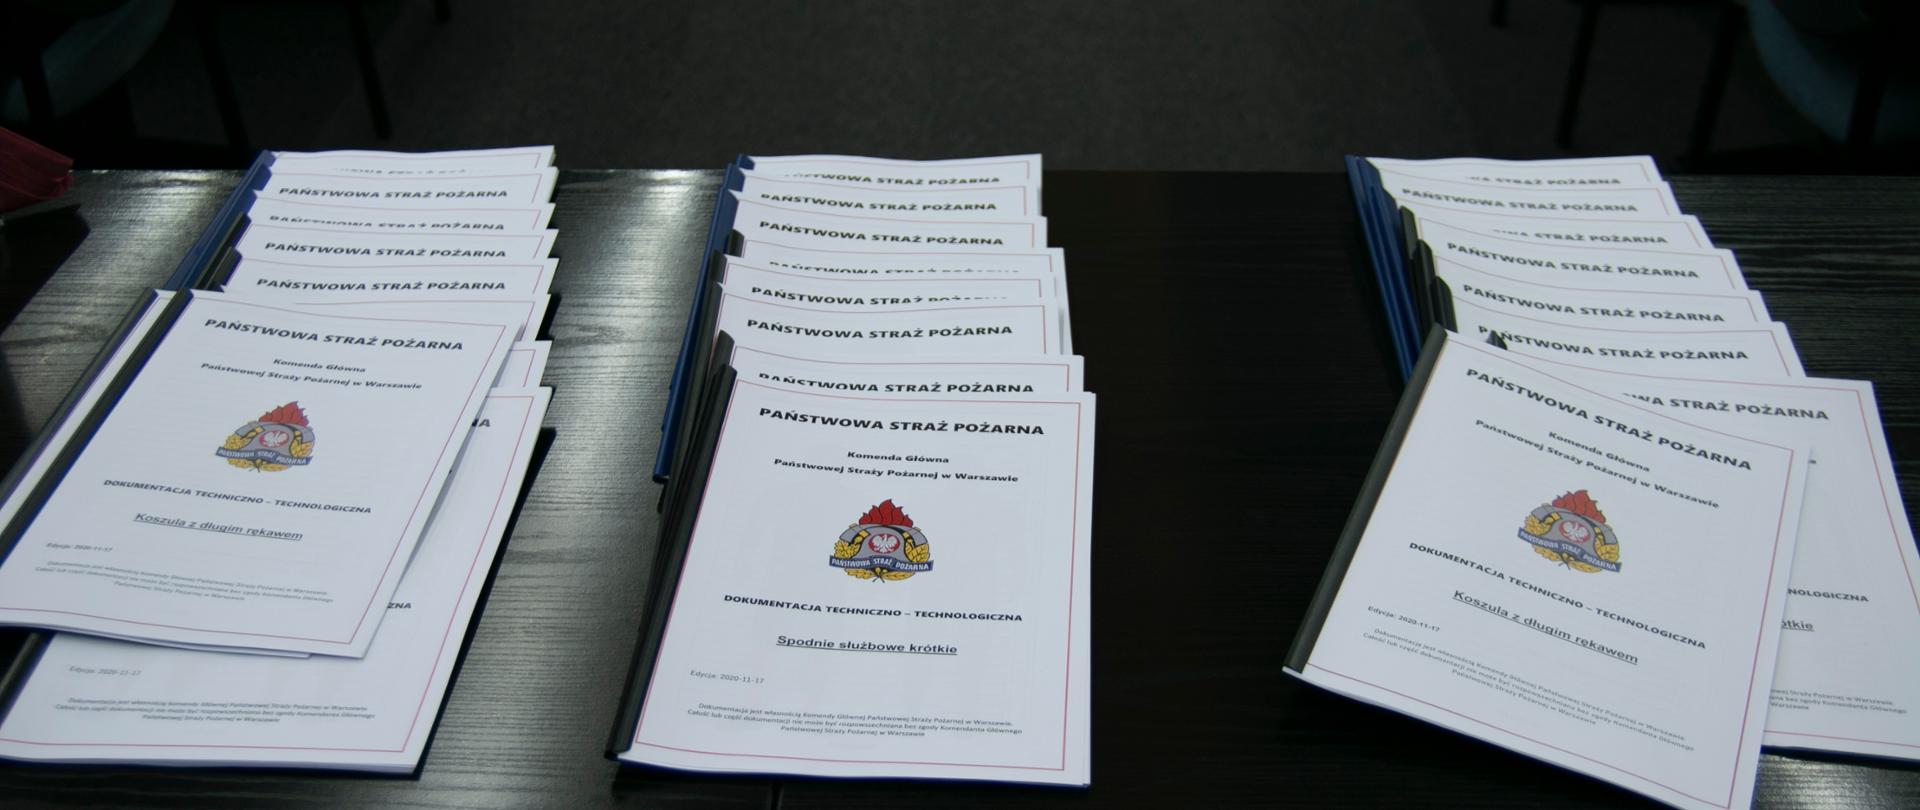 na stole zaprezentowana jest dokumentacja do nowego umundurowania dla funkcjonariuszy PSP